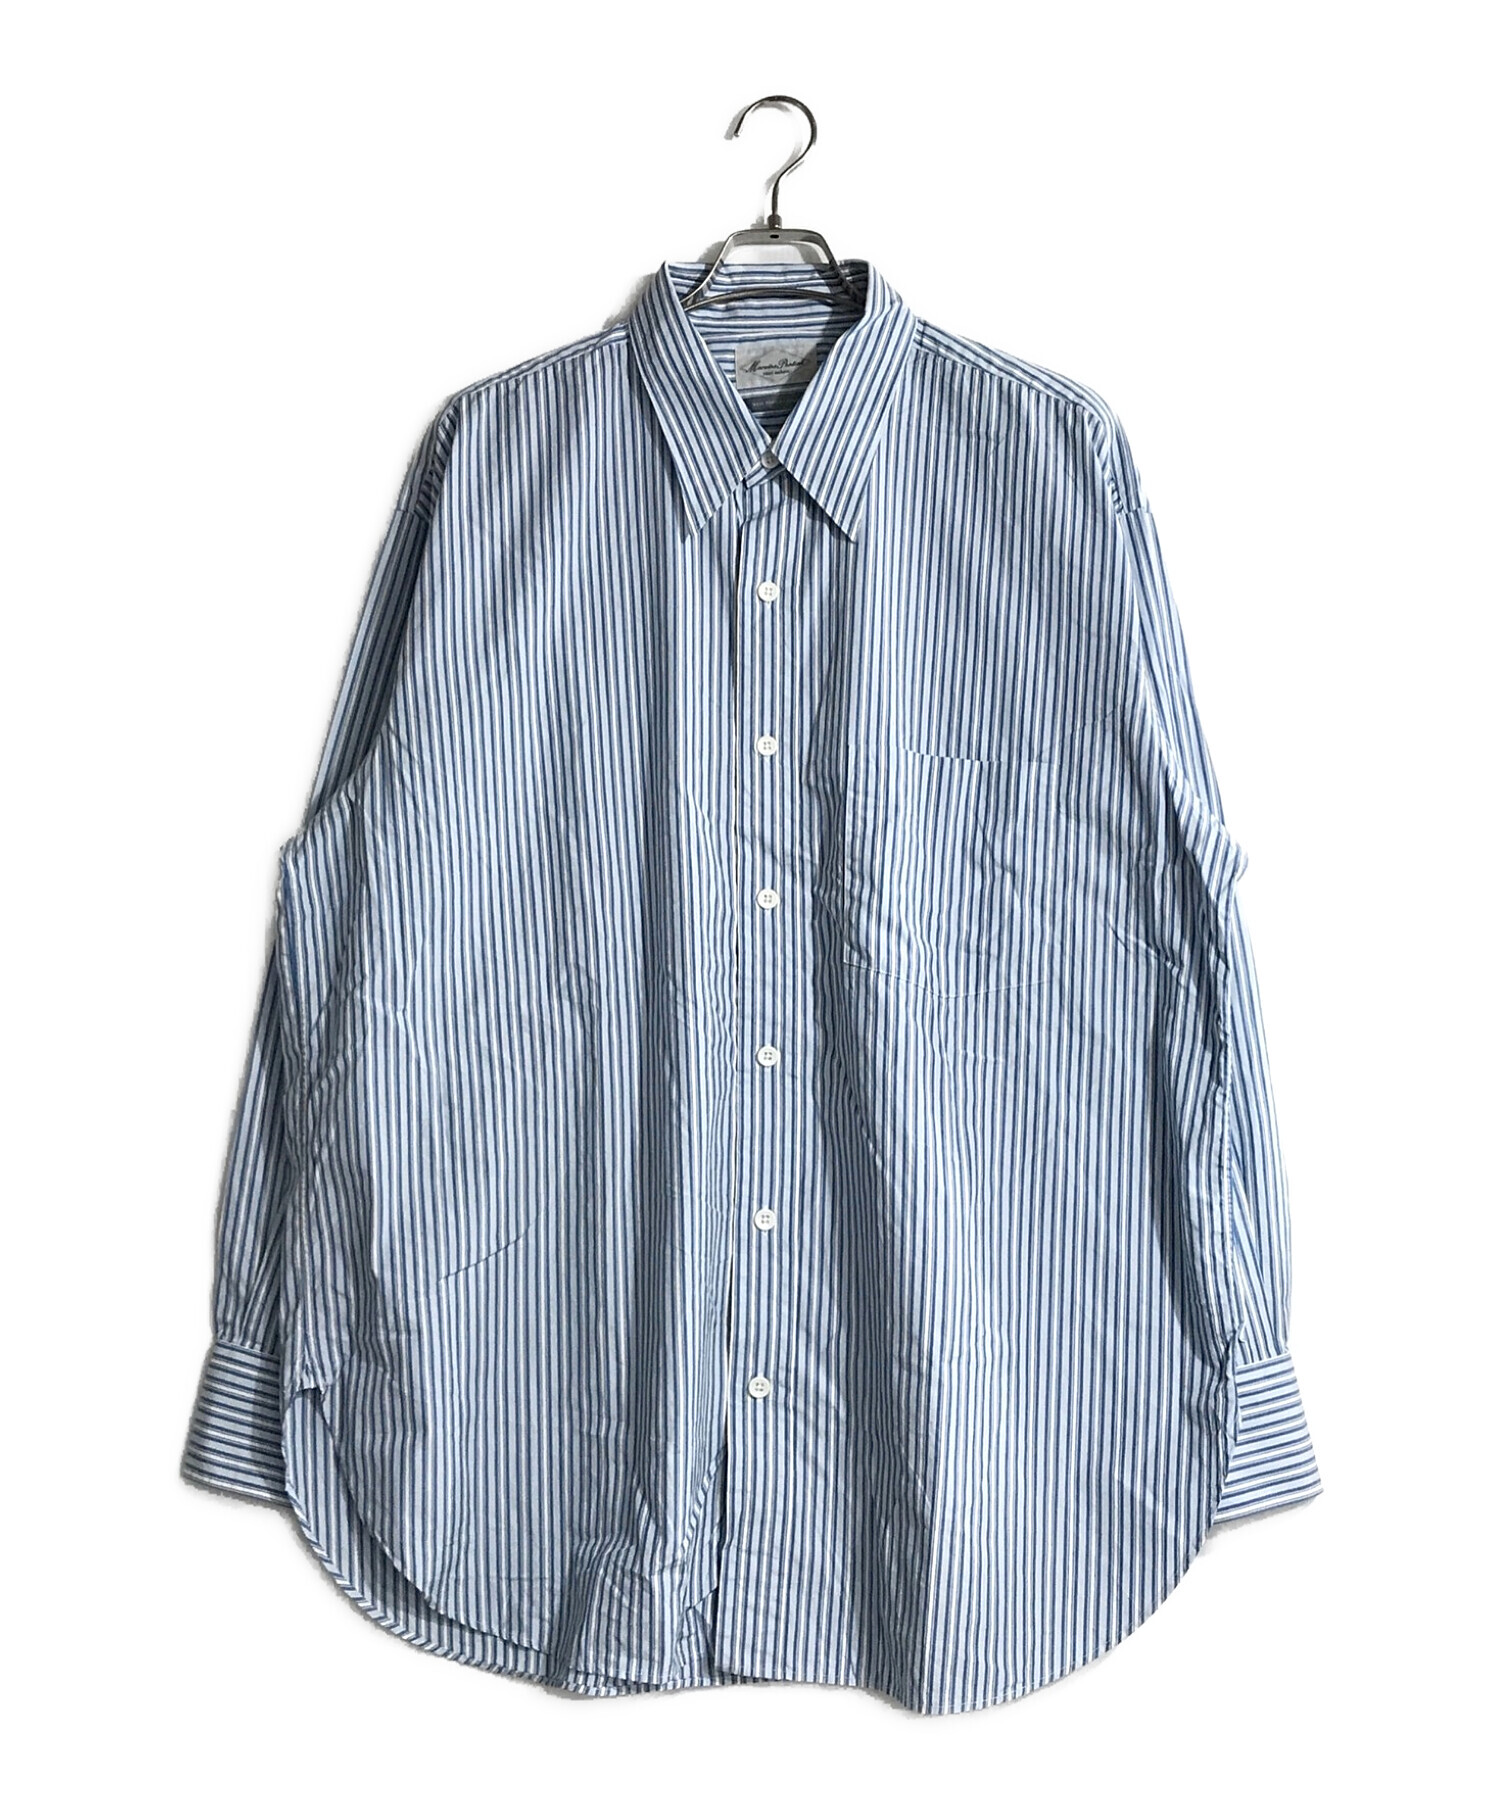 Marvine Pontiak Shirt Makers (マーヴィンポンティアックシャツメイカーズ) レギュラーカラーストライプシャツ  ブルー×ホワイト サイズ:ONE SIZE